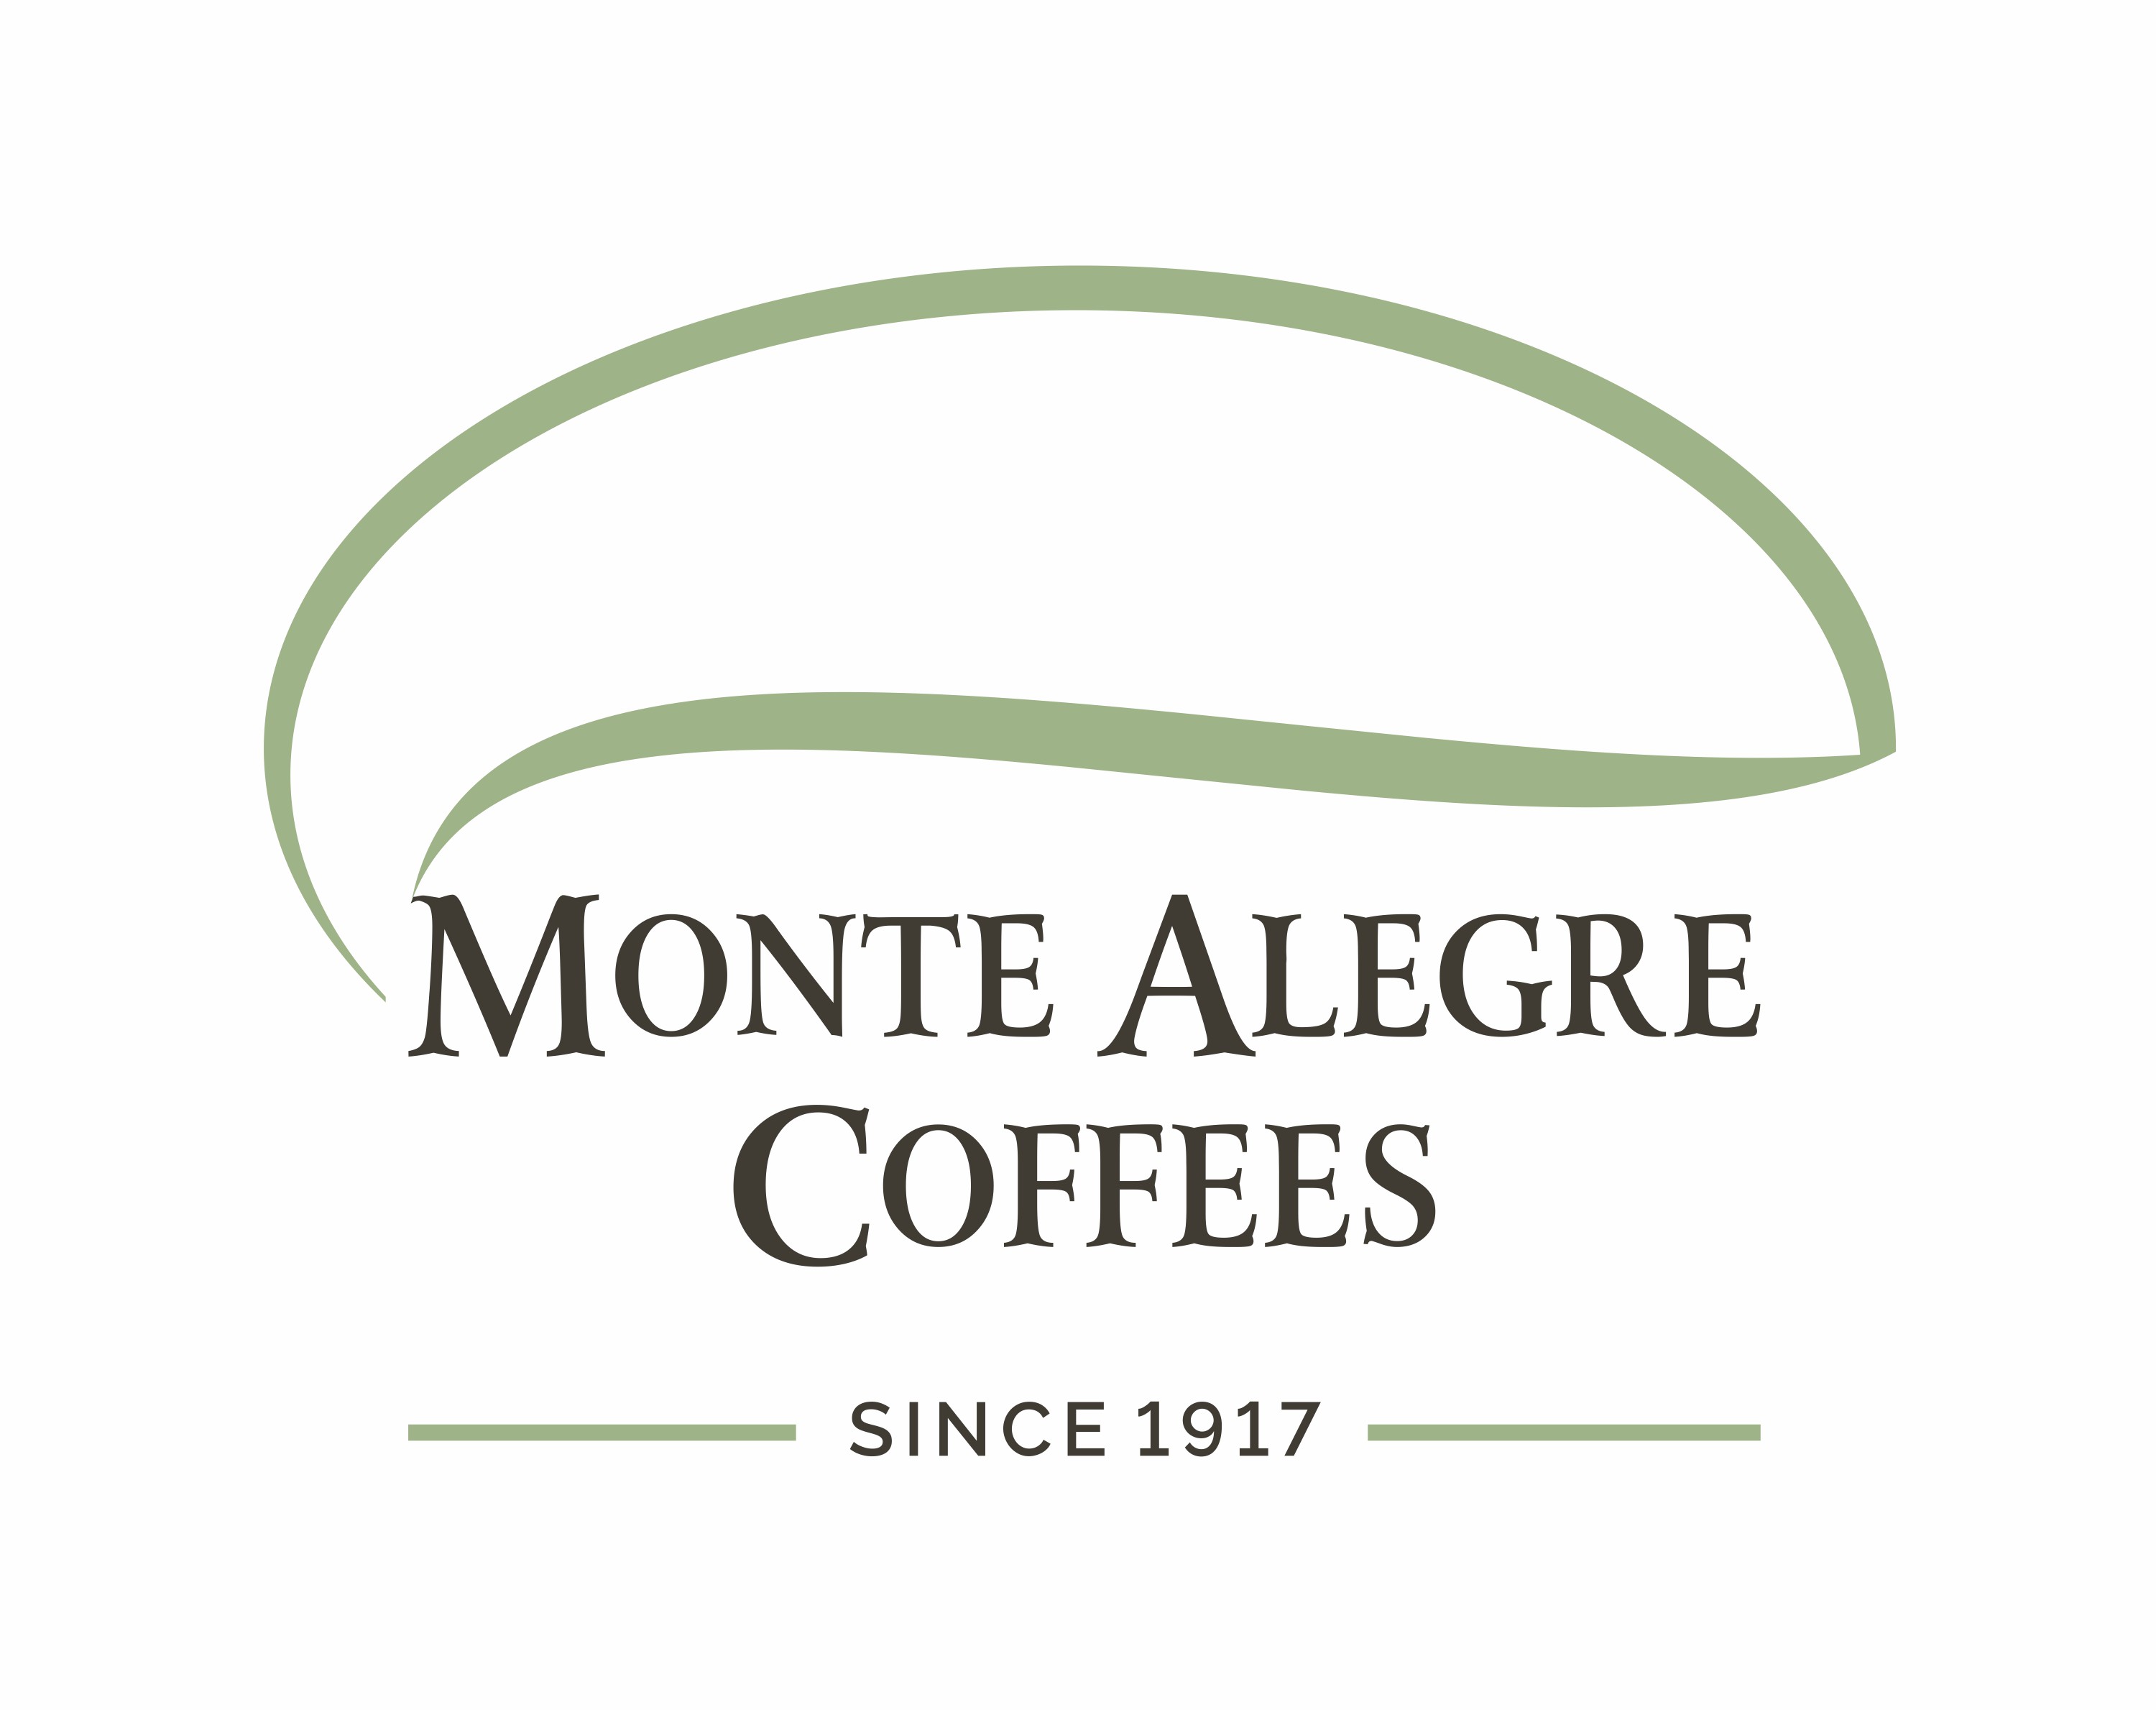 MONTE ALEGRE COFFEES